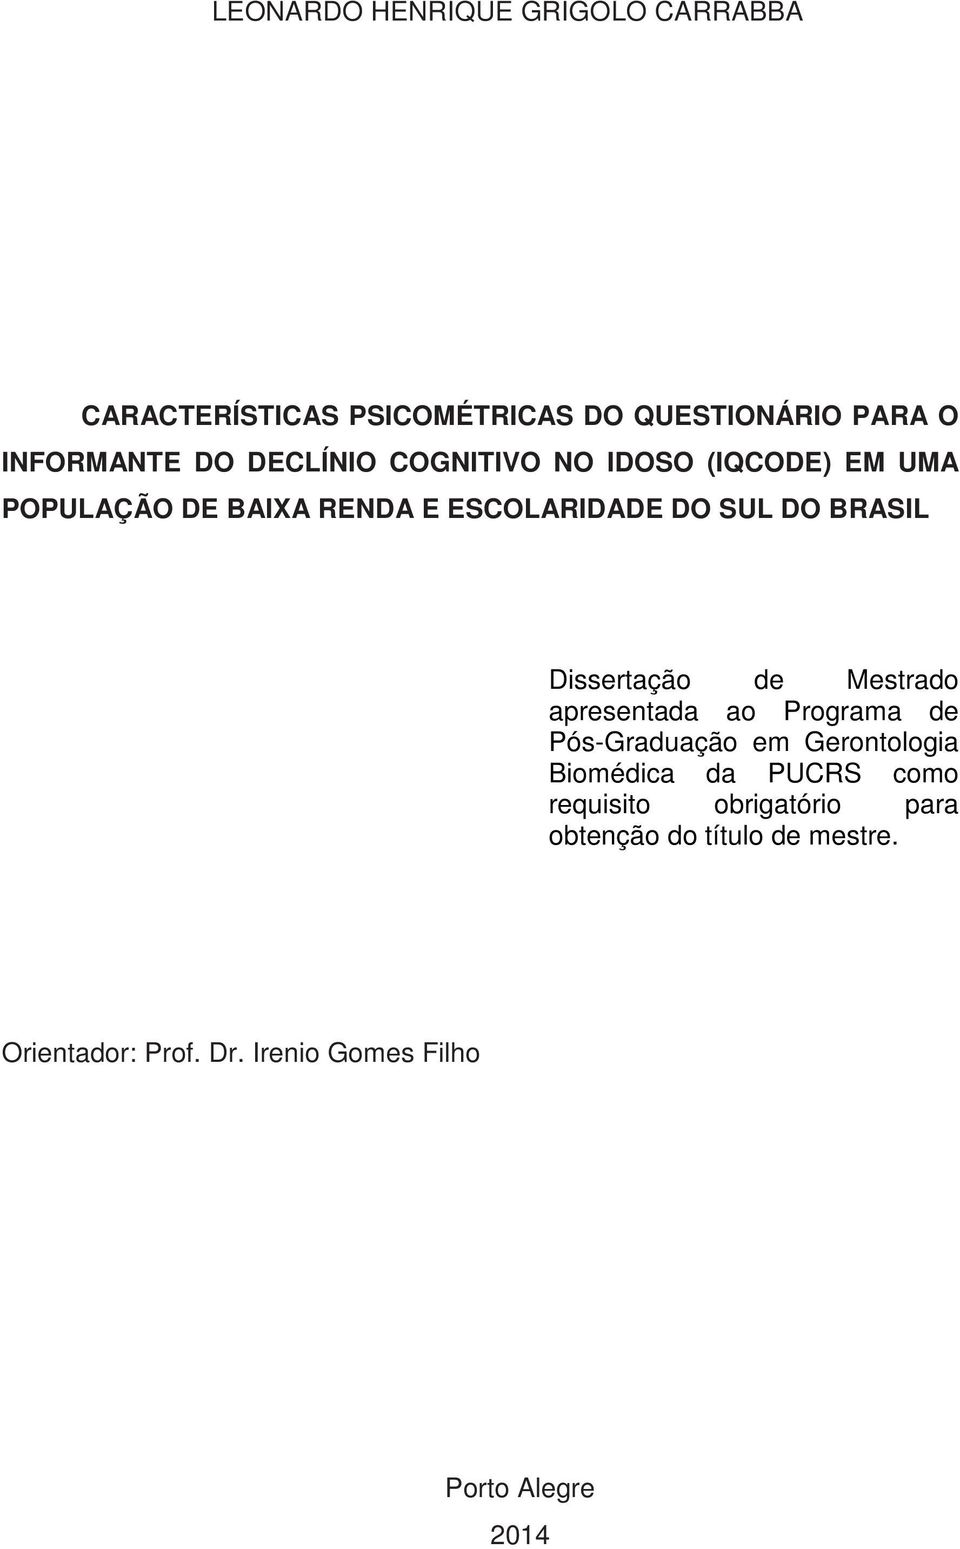 Dissertação de Mestrado apresentada ao Programa de Pós-Graduação em Gerontologia Biomédica da PUCRS como